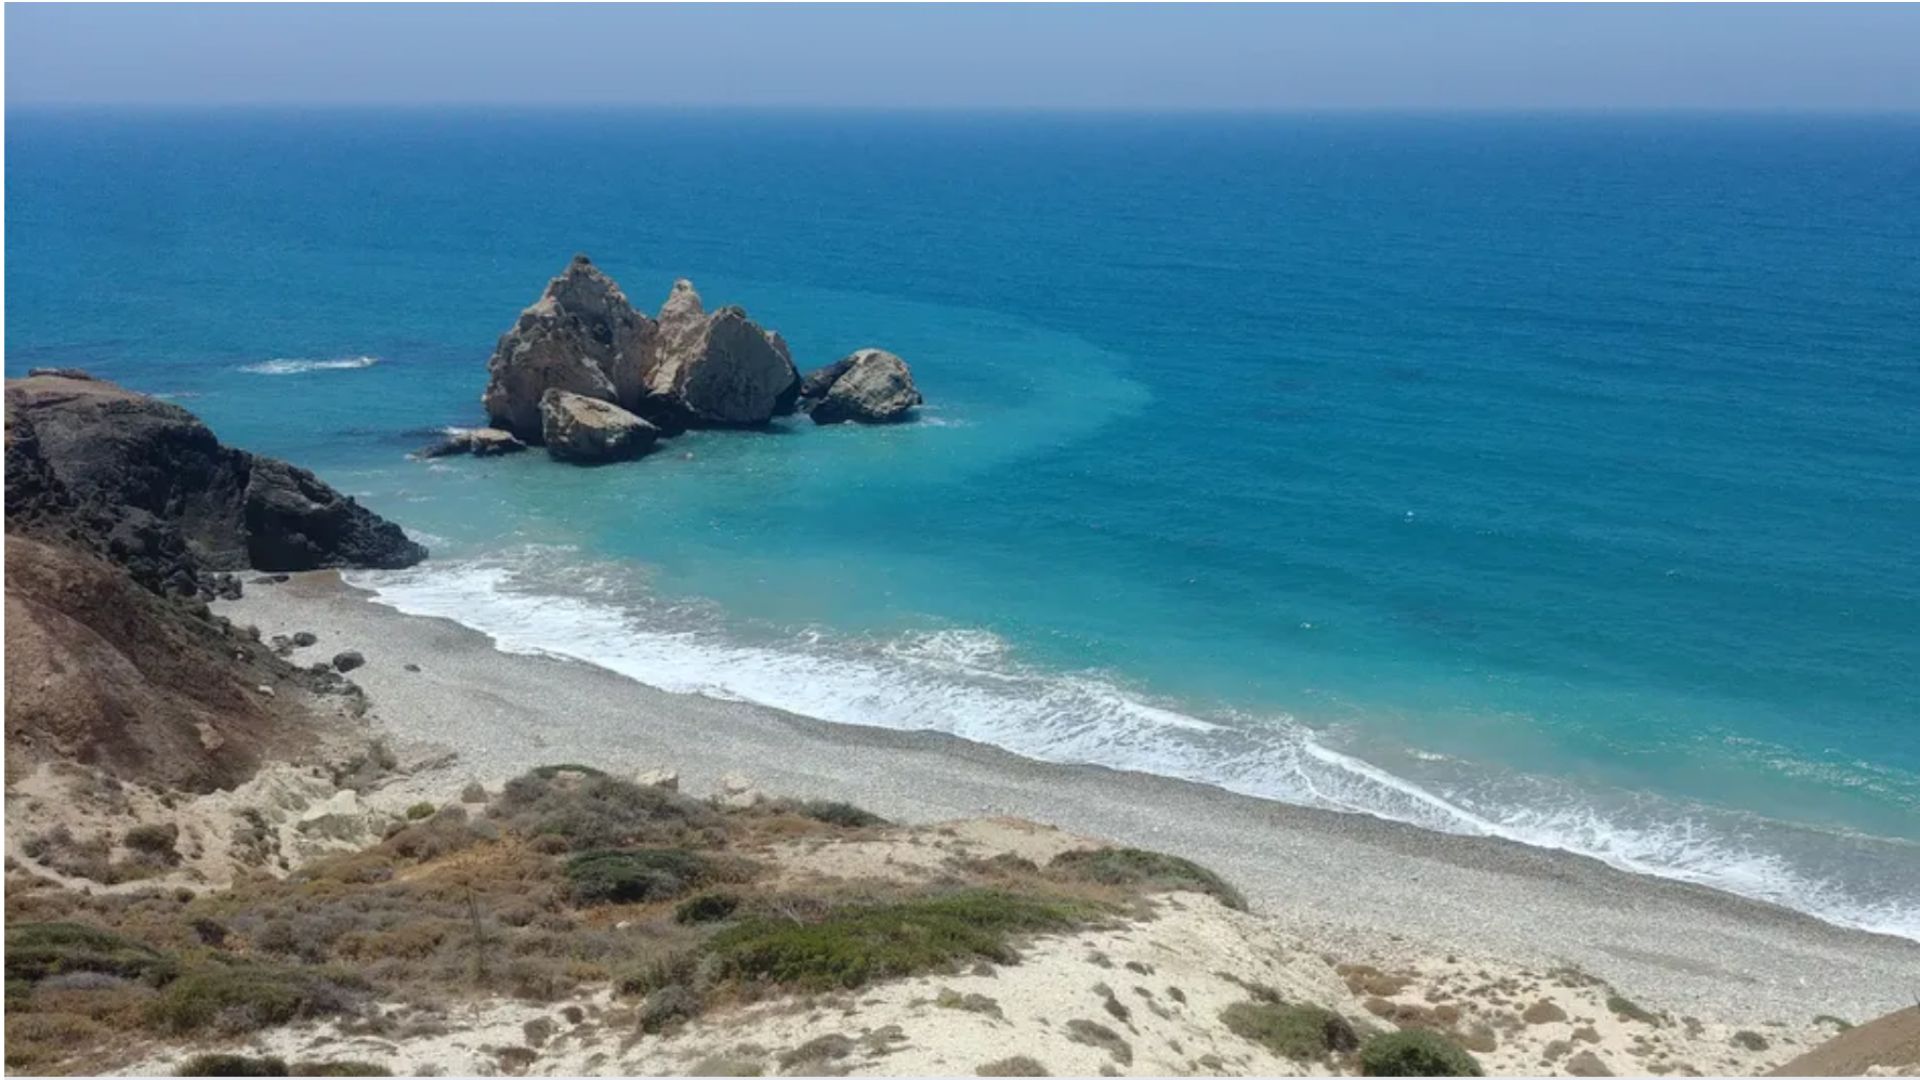 FranceInfo, Français du monde. “Chypre : recherche touristes désespérément“